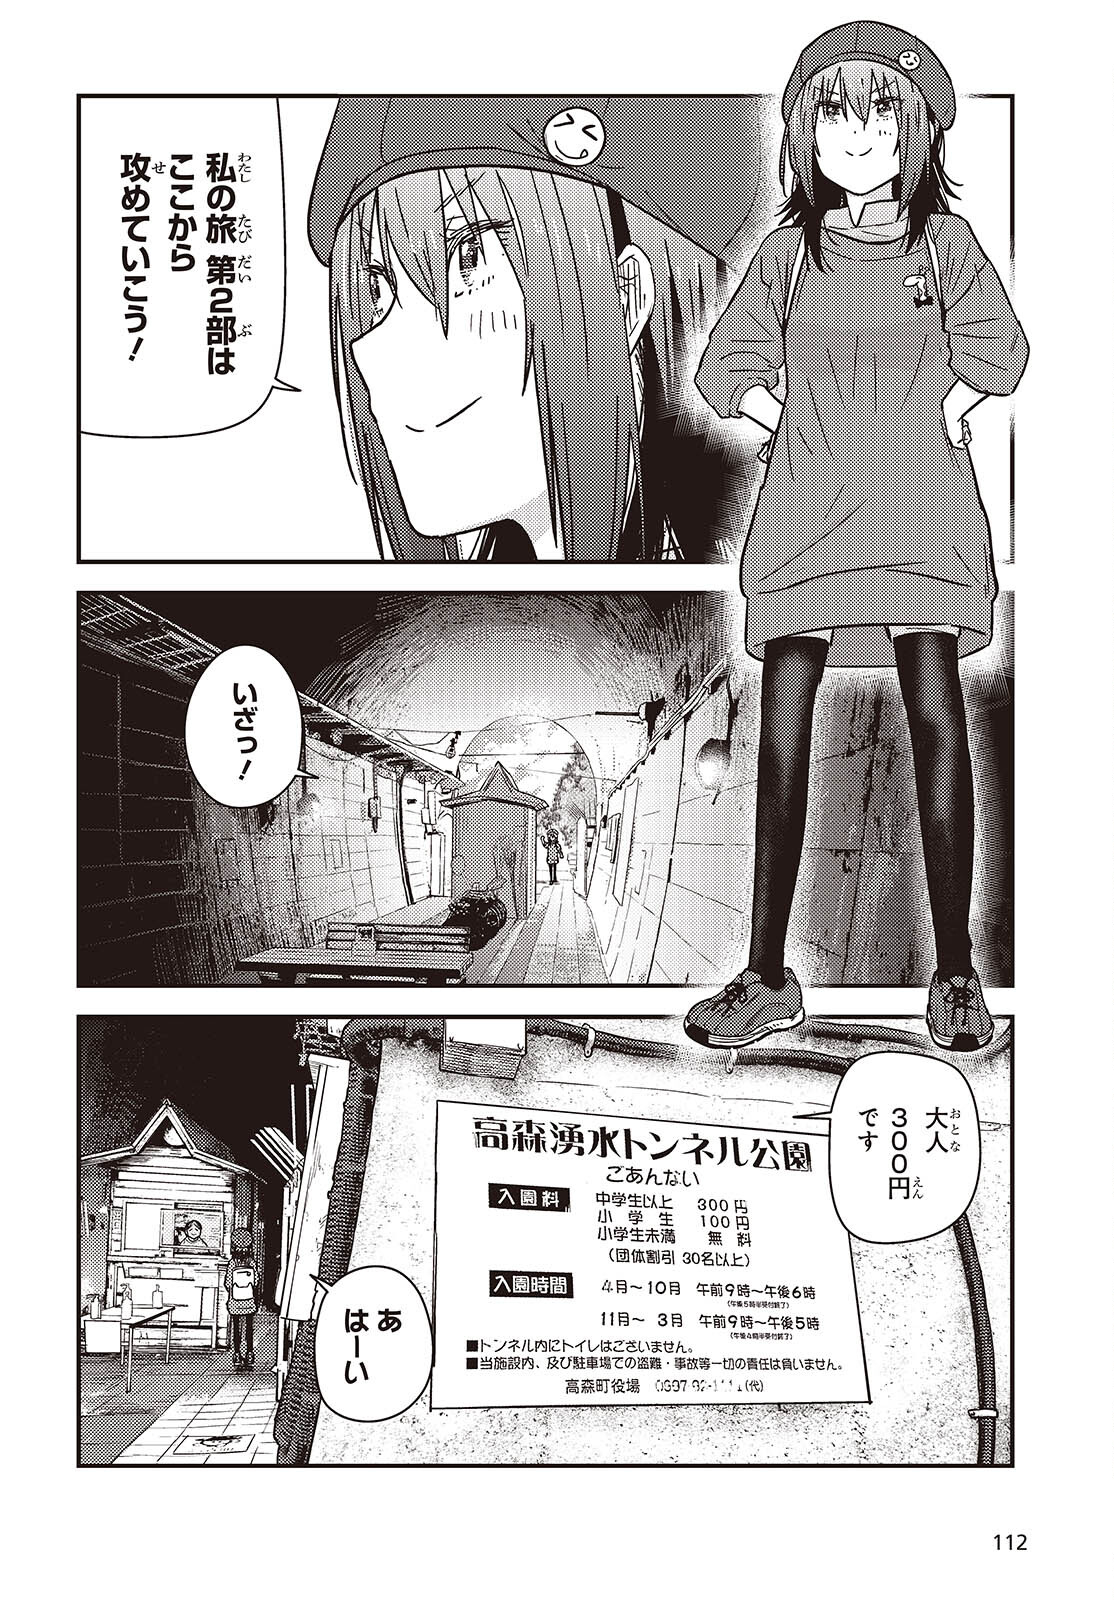 ざつ旅-That's Journey- 第35話 - Page 2